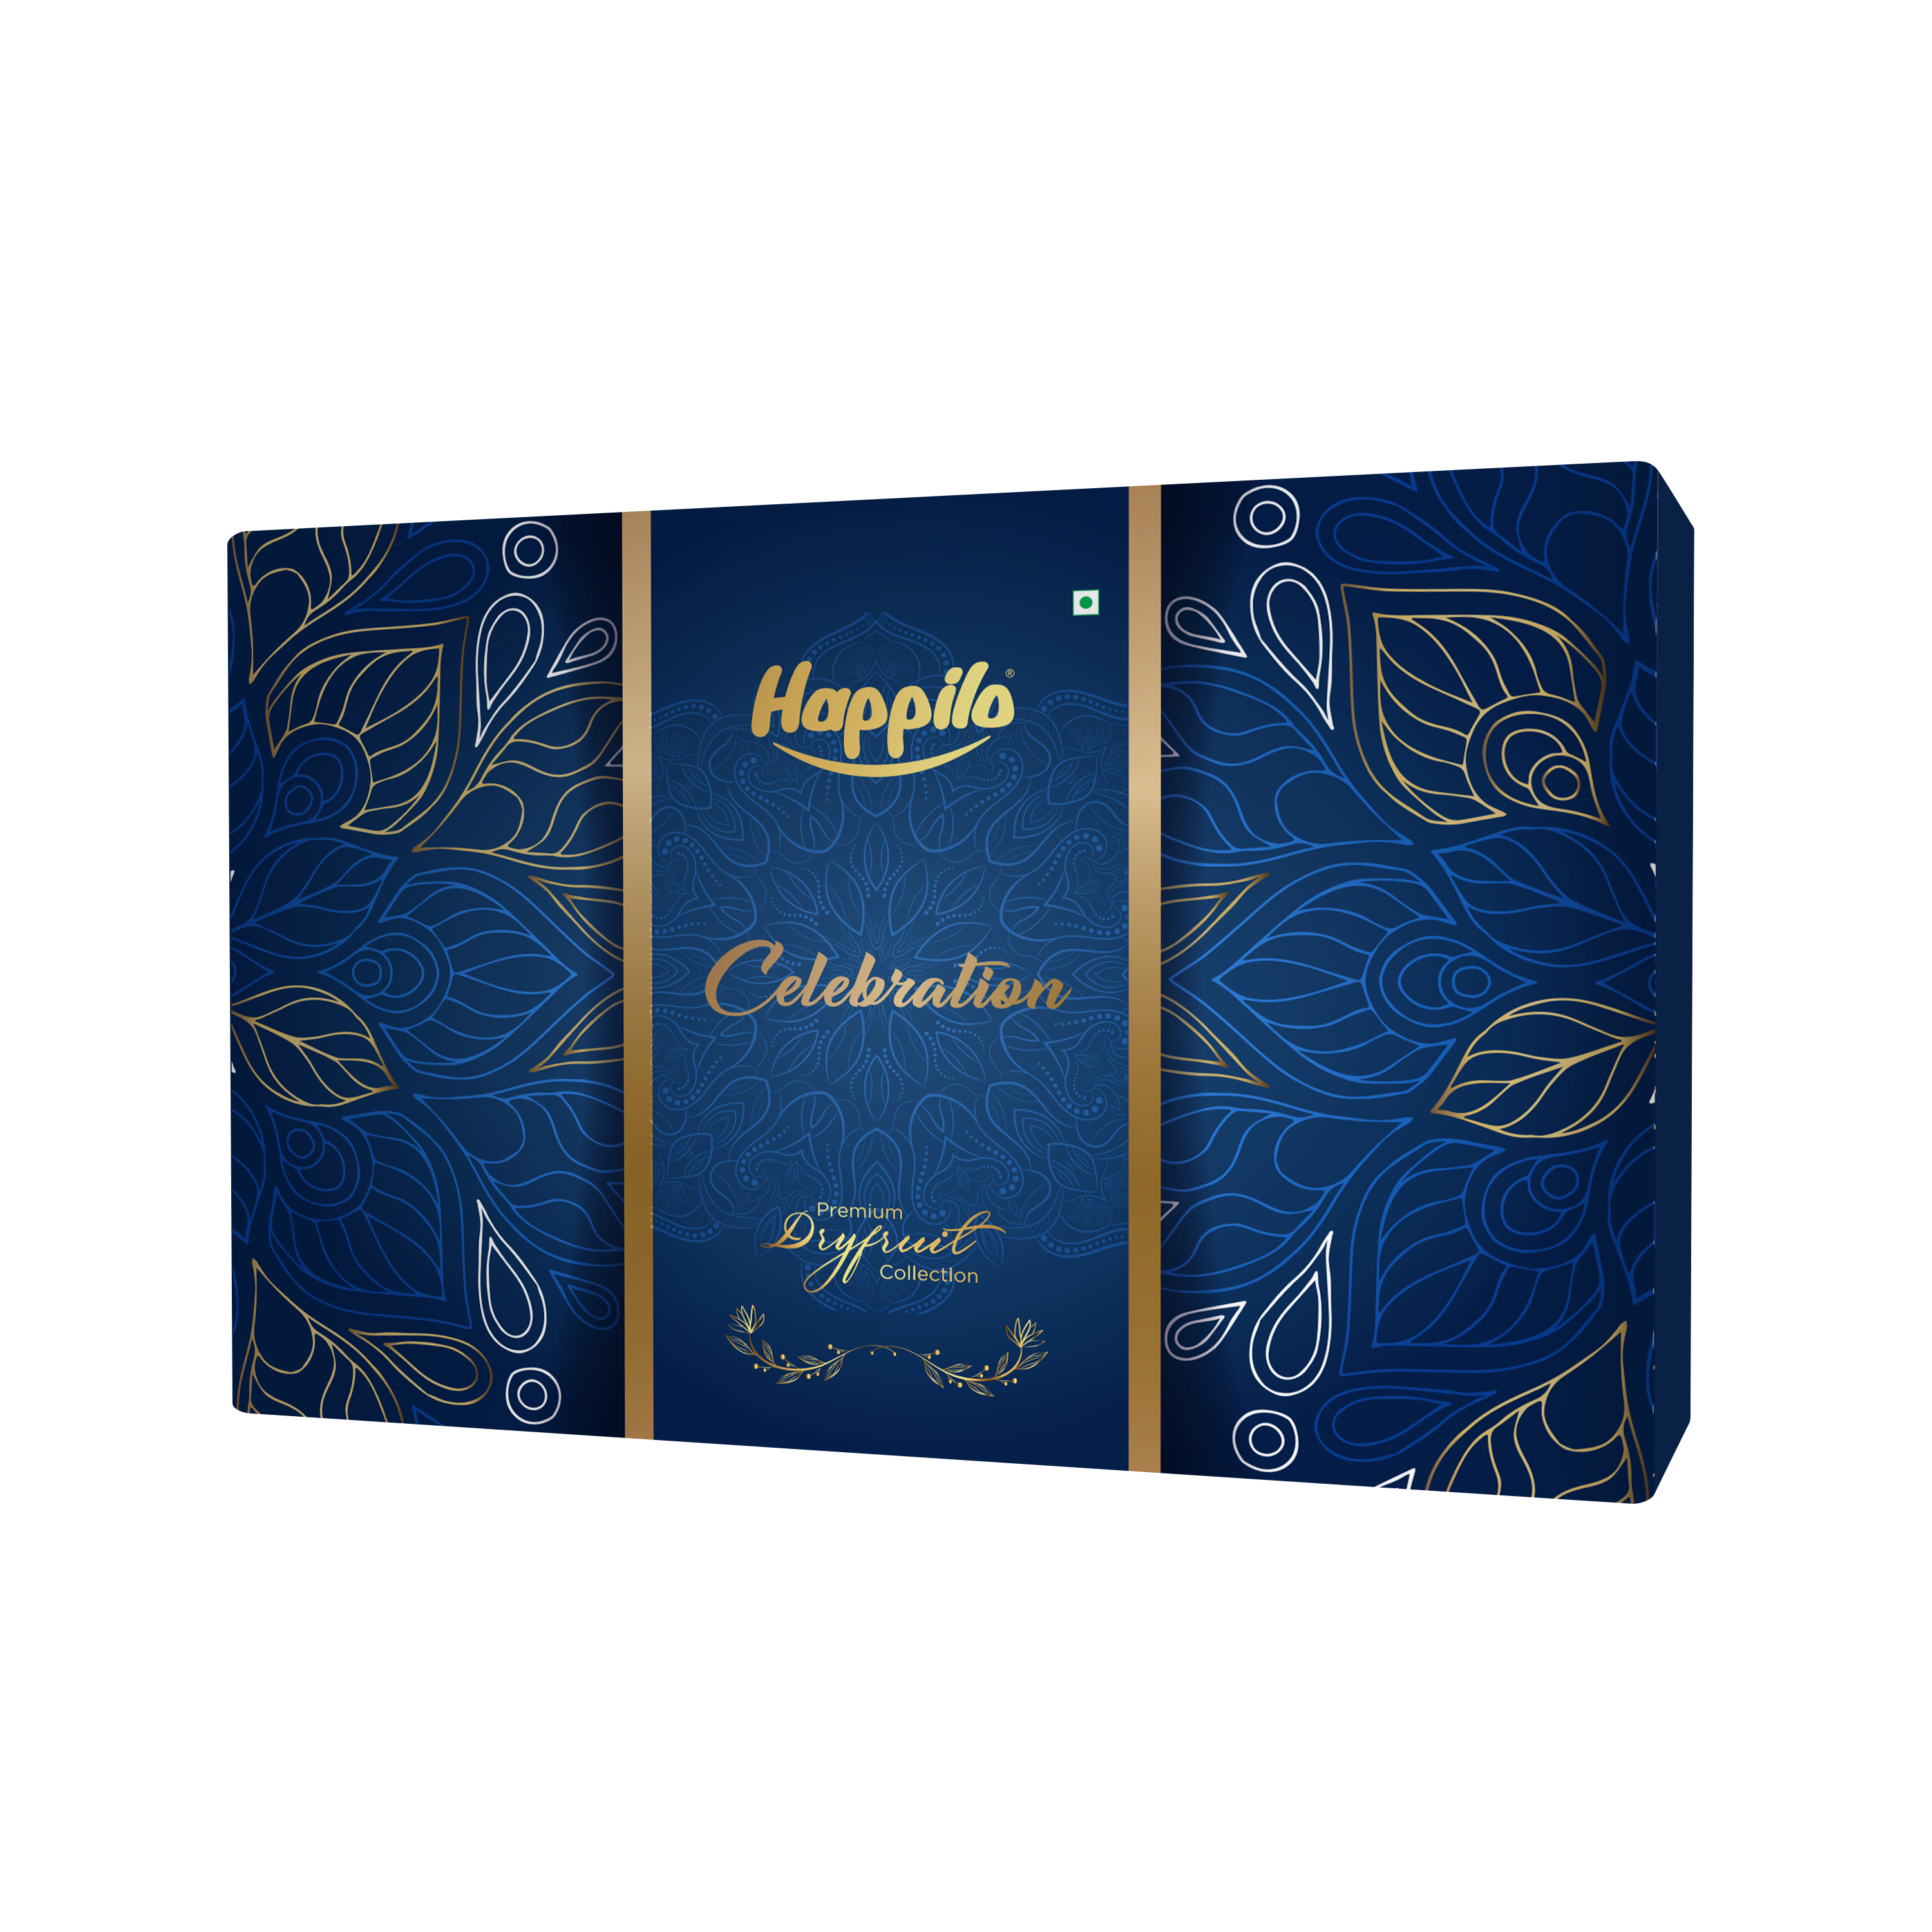 Happilo Dry Fruit Celebration Gift Box Nightingale